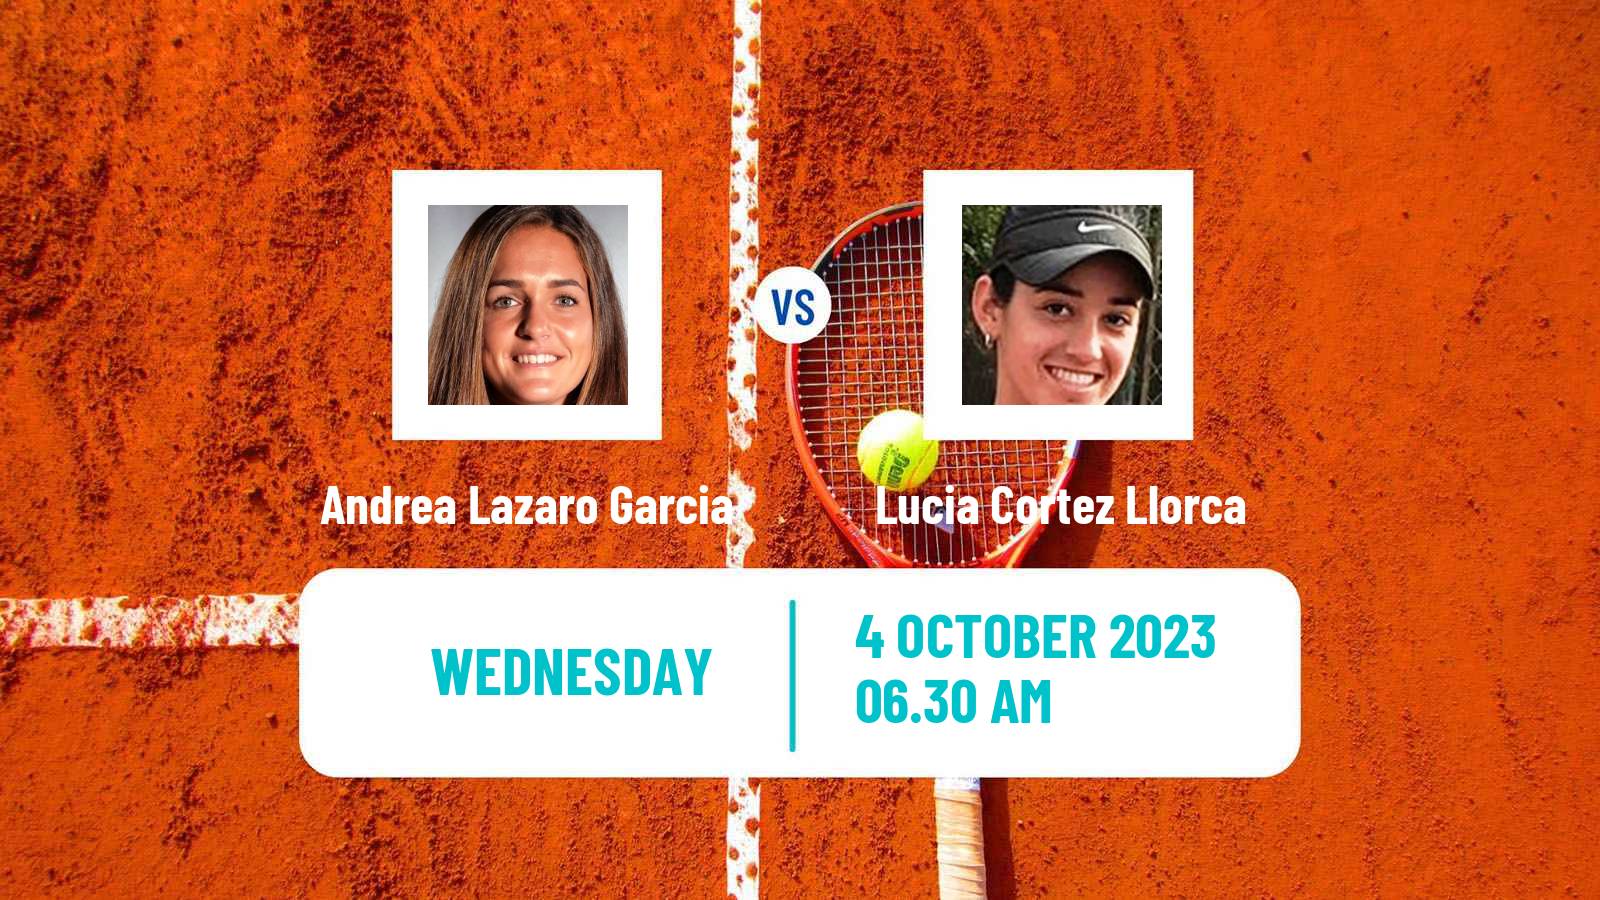 Tennis ITF W40 Lisbon Women Andrea Lazaro Garcia - Lucia Cortez Llorca